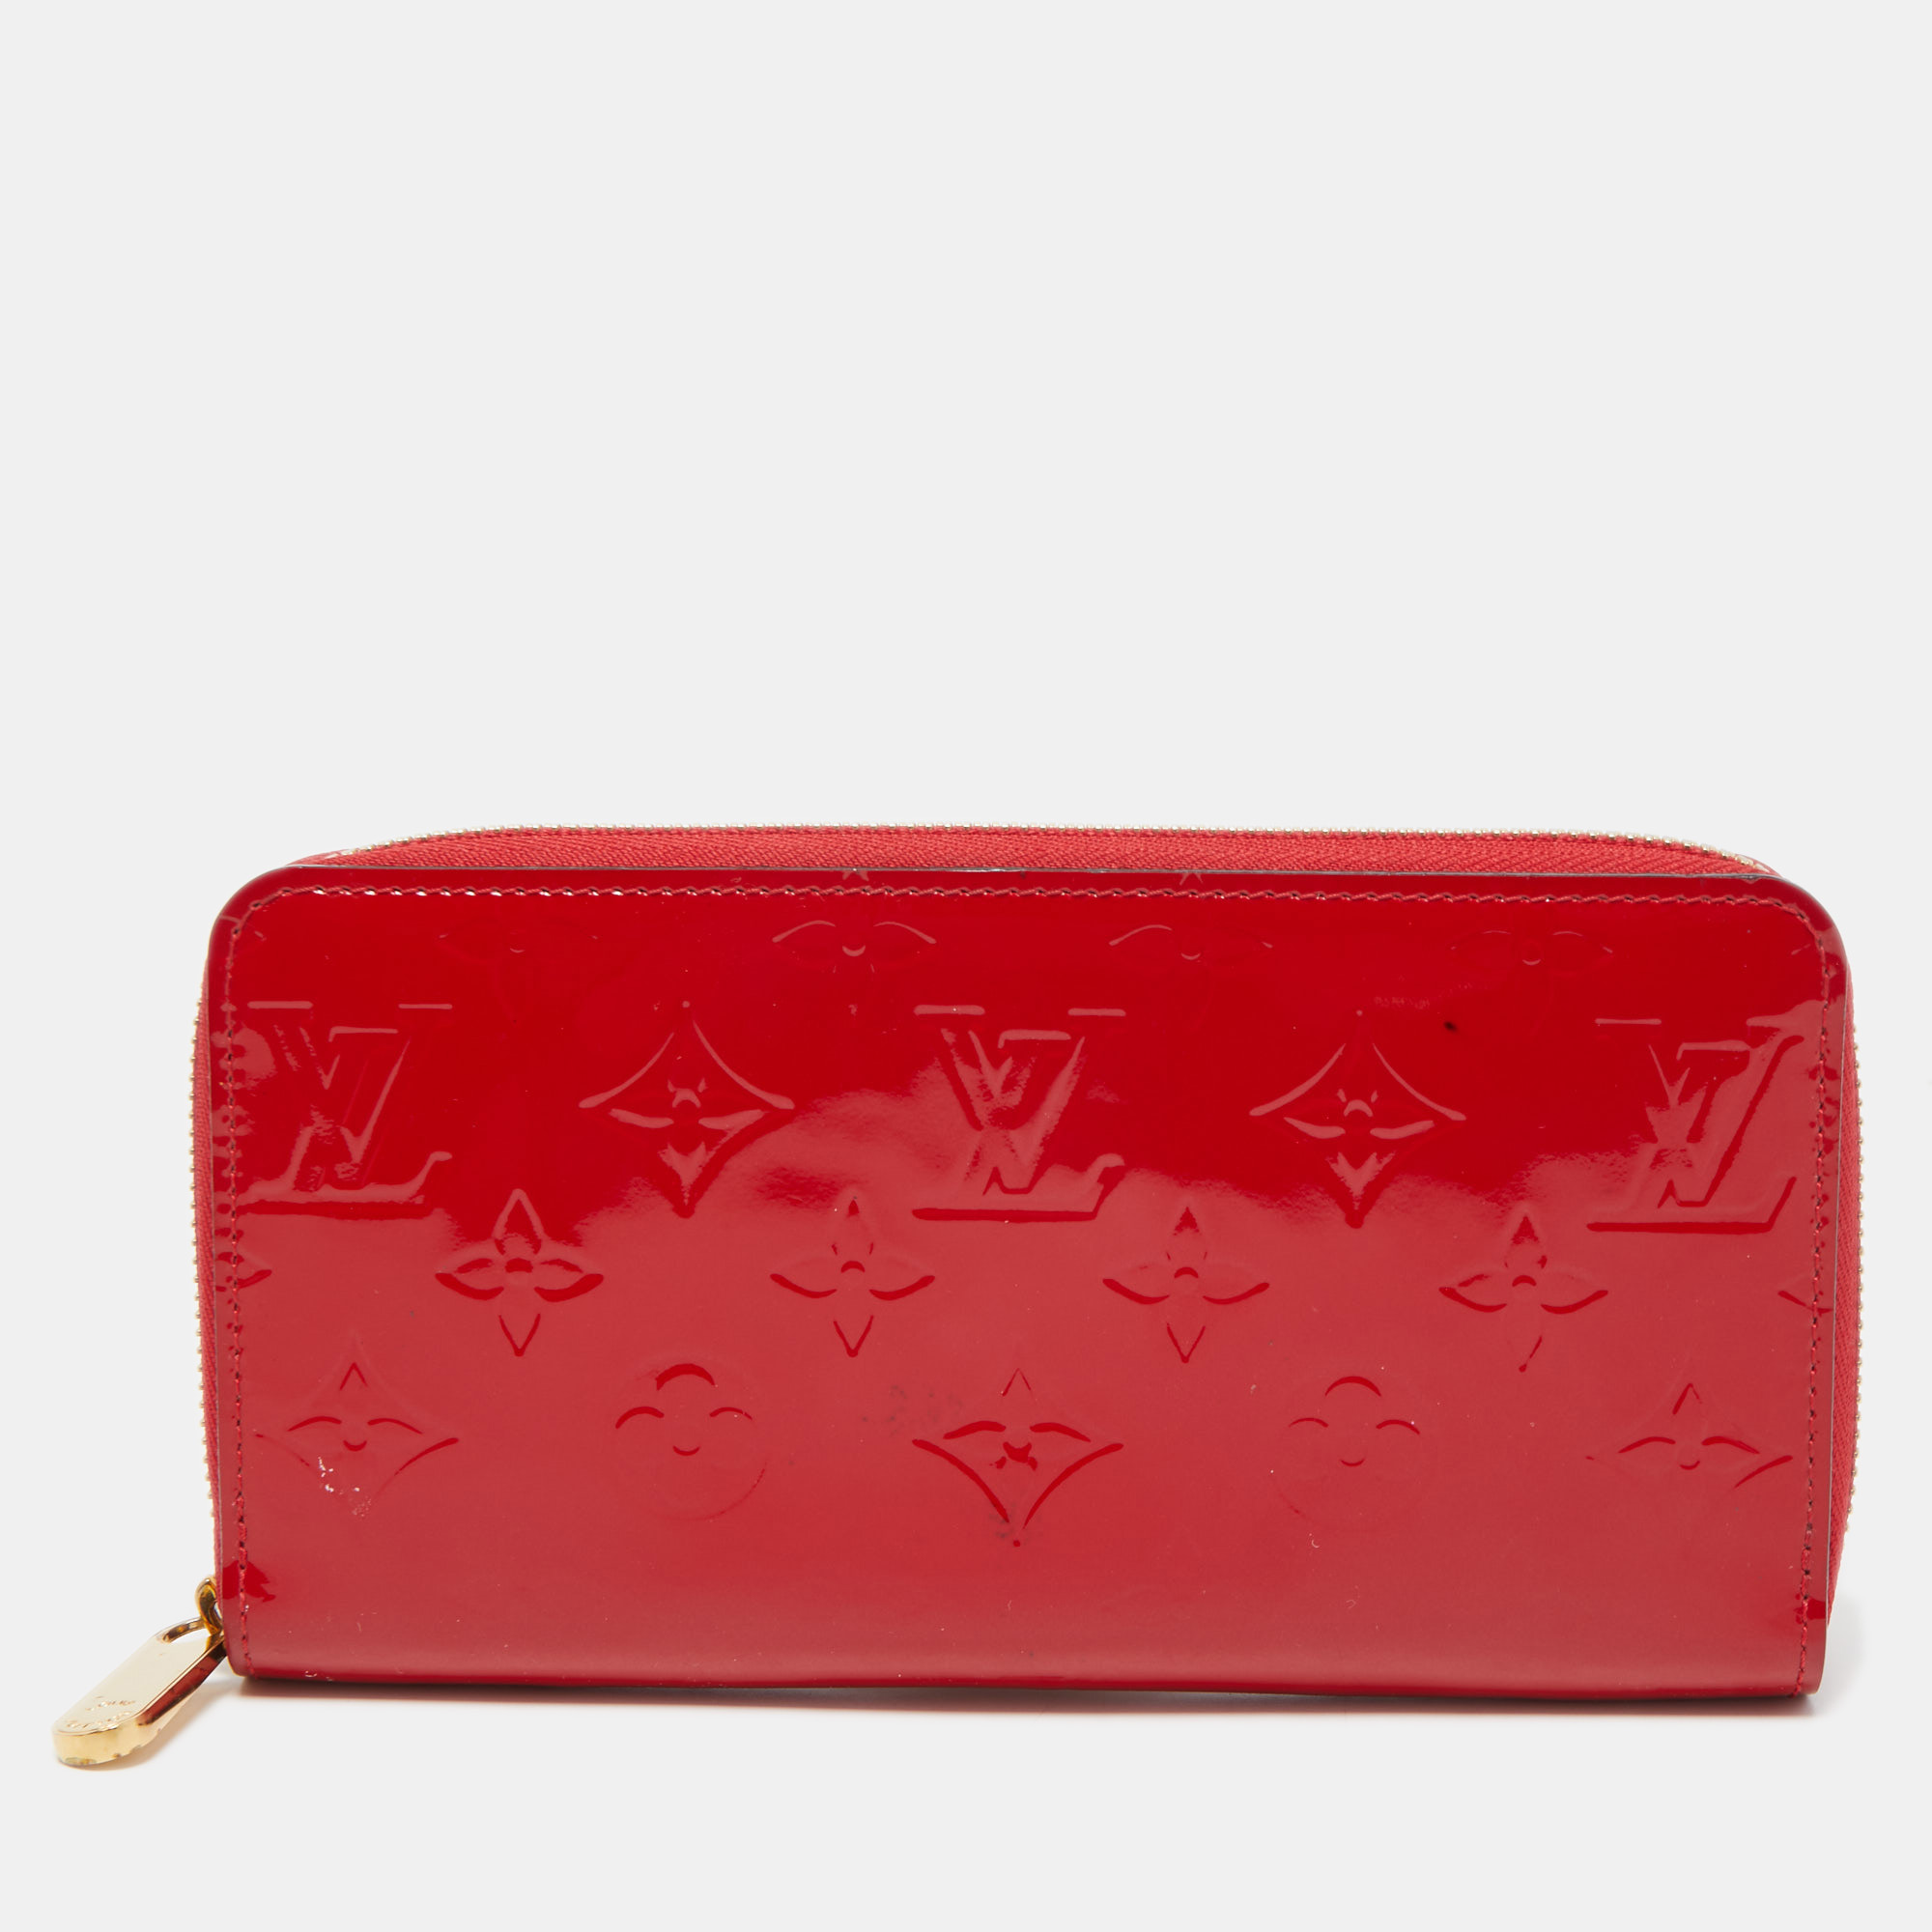 Louis Vuitton Cerise Monogram Vernis Zippy Wallet